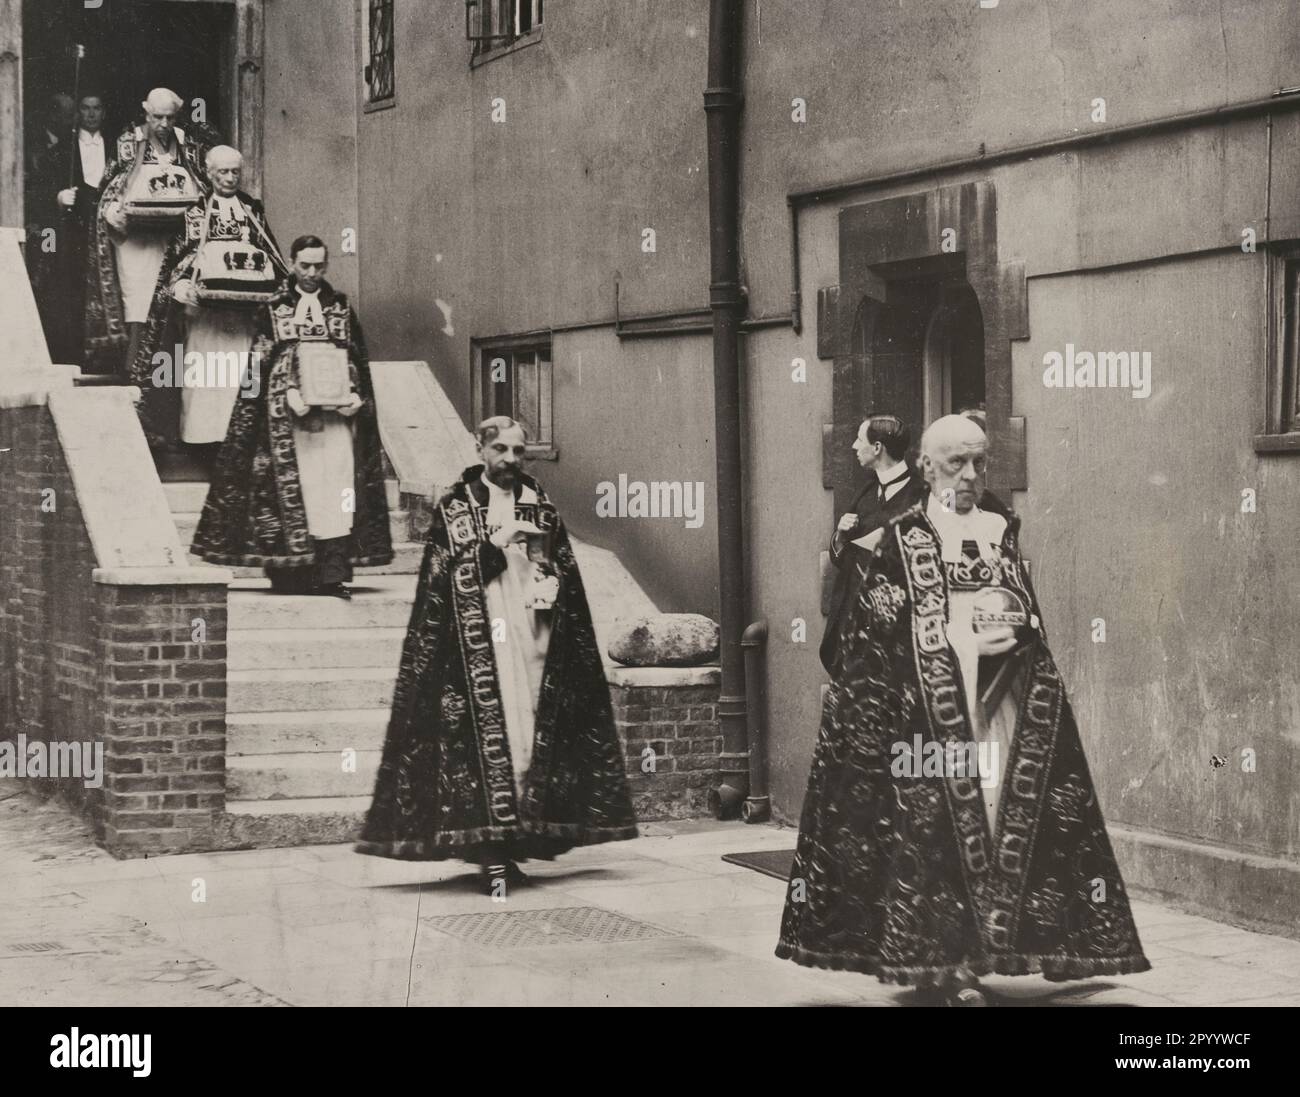 König George V. Krönung. Tragen der Krönungsregalia von der Jerusalem-Kammer zur Westminster-Abtei - das Foto zeigt eine Prozession von Männern, die aufwendige Gewänder tragen, die Jerusalum-Kammer verlassen und jeweils einen anderen Gegenstand für die Krönung des Königs tragen, 1911 Stockfoto